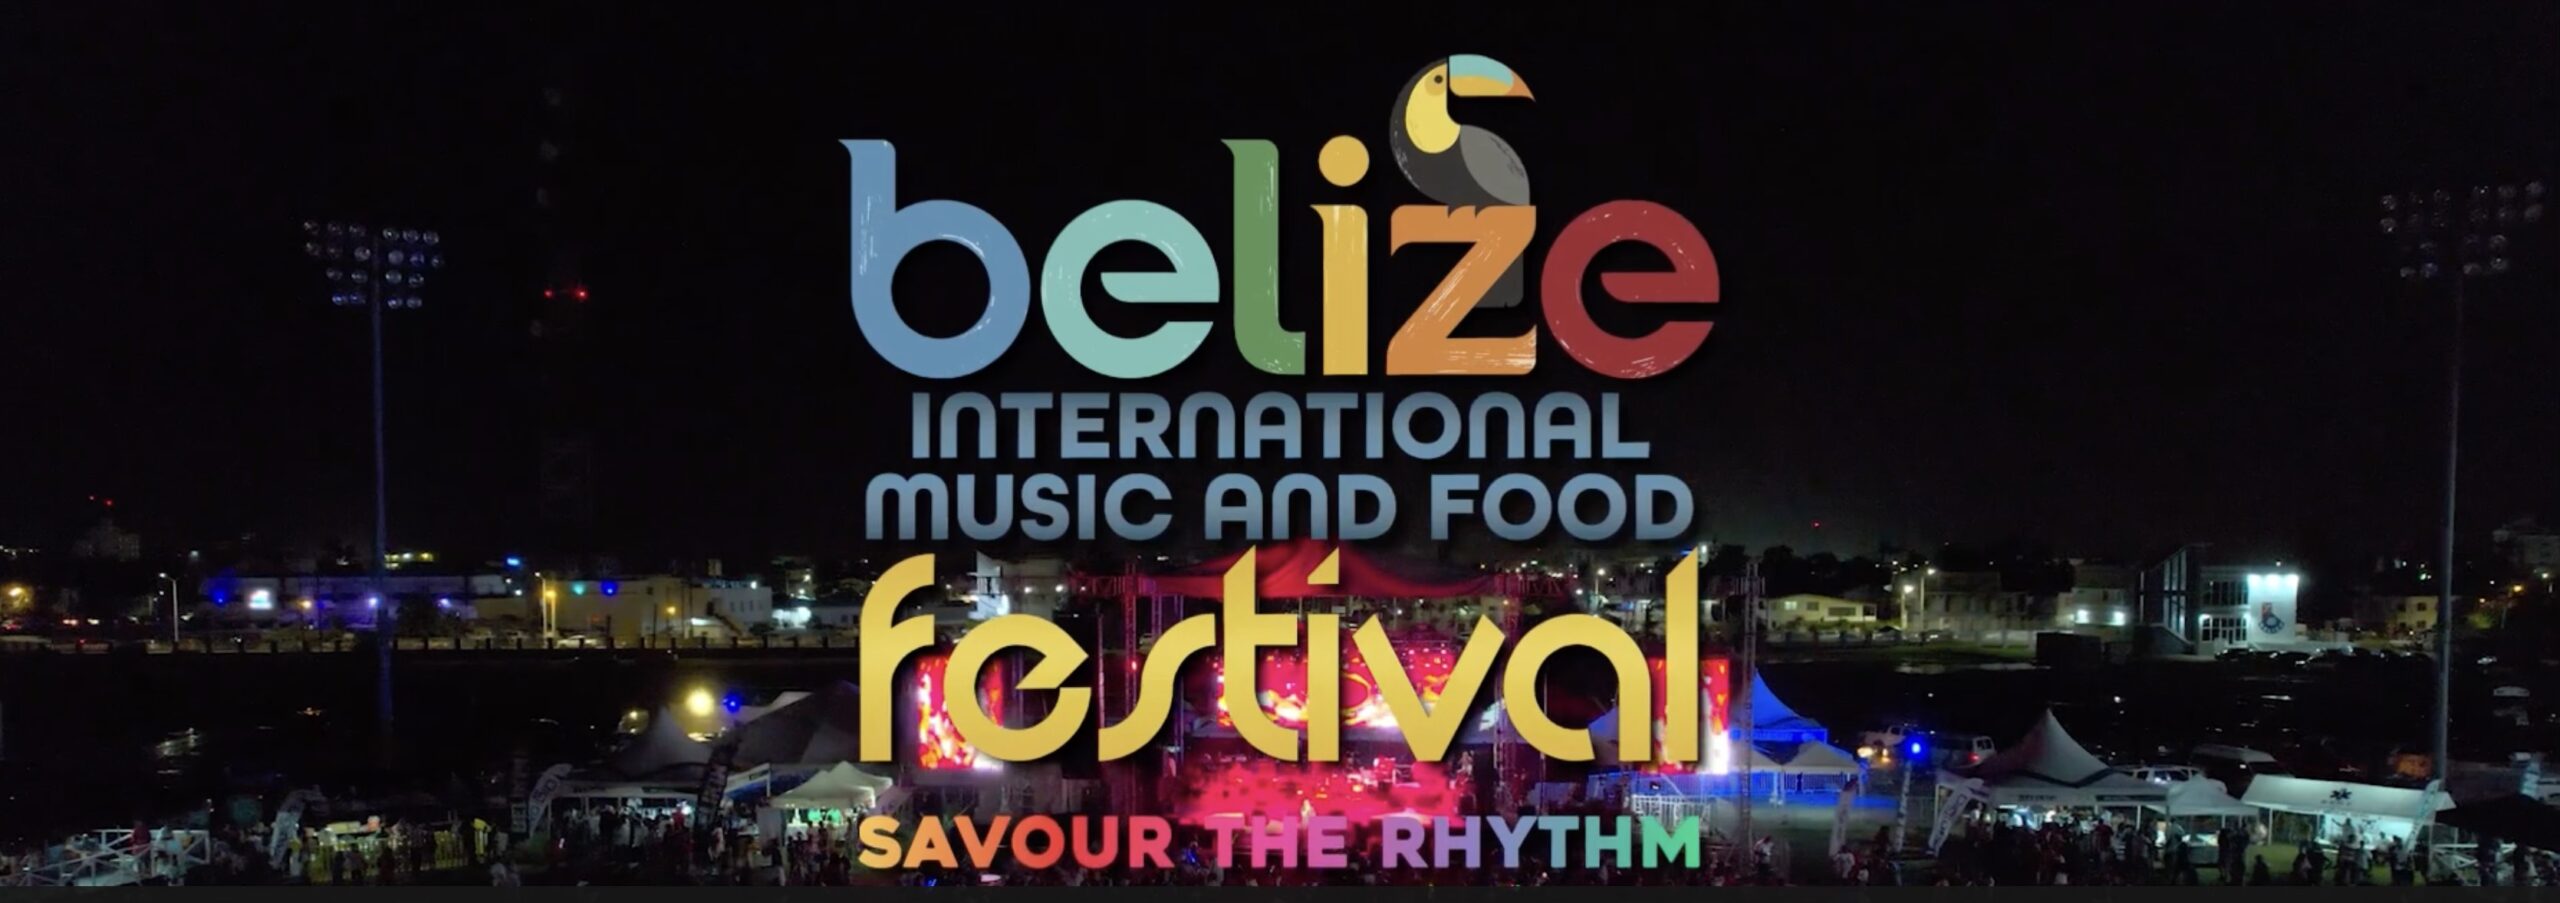 Festival Internacional de Música y Gastronomía de Belice